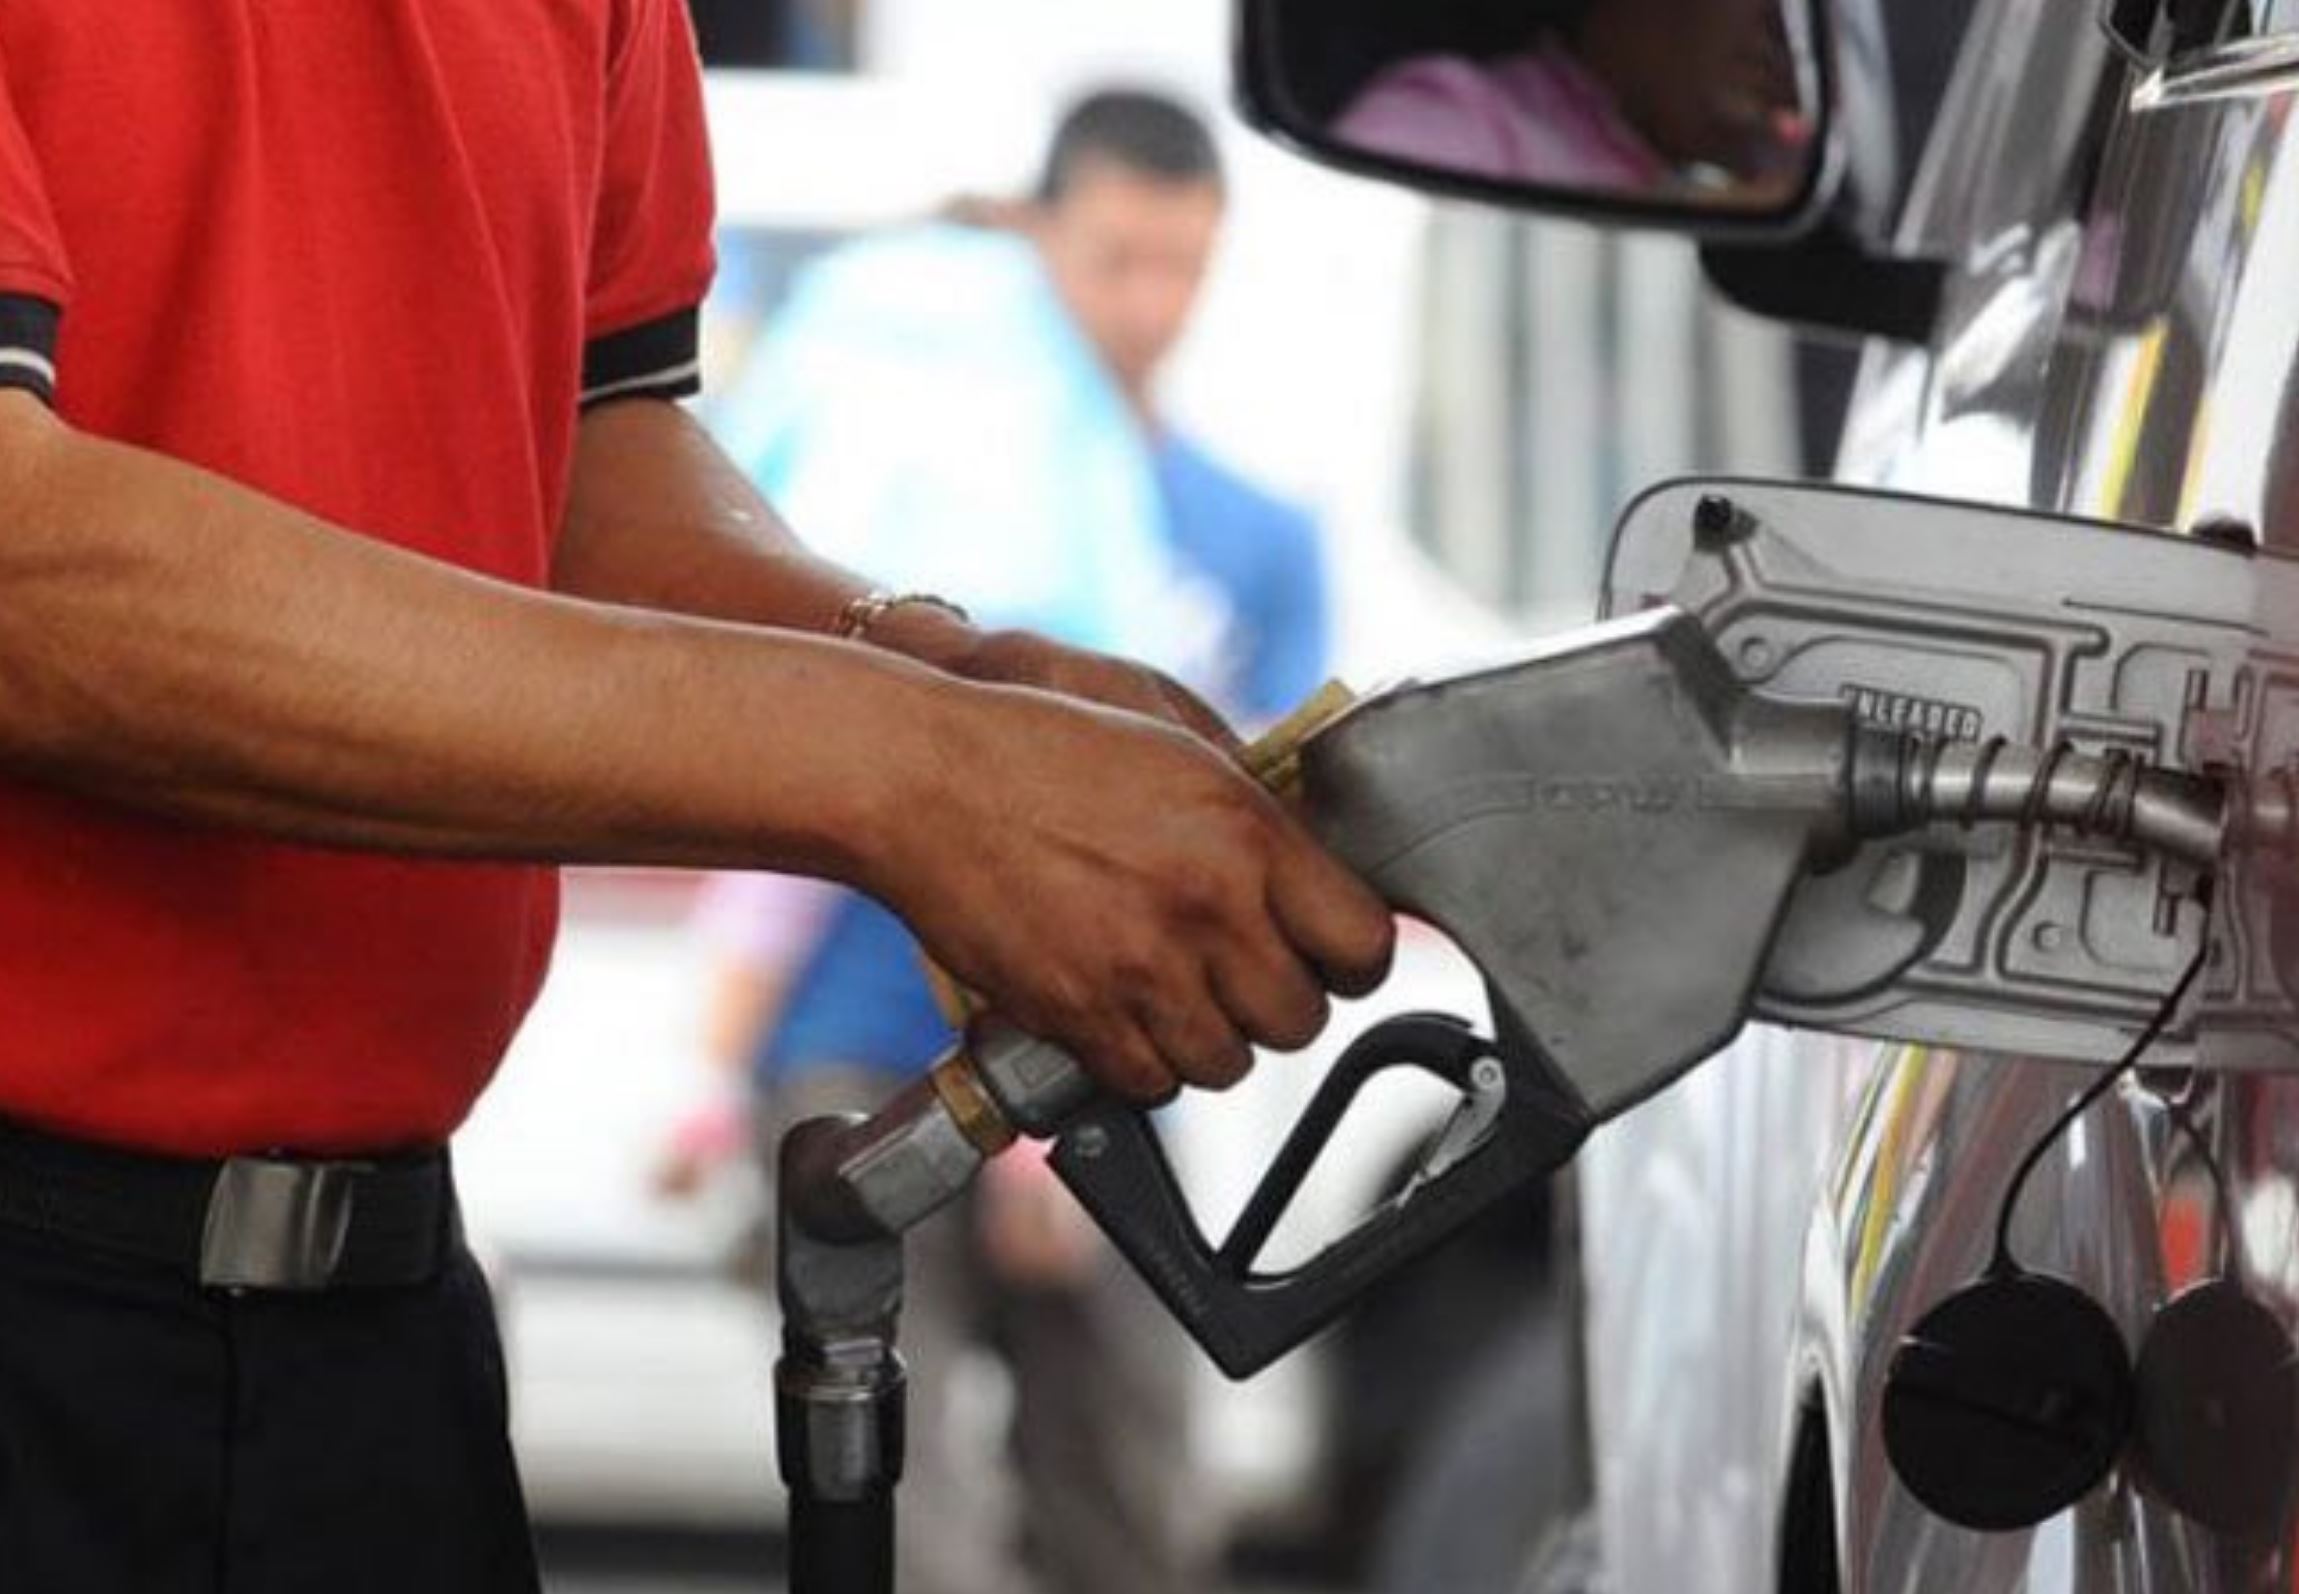 Congelamiento de combustibles llega cuando alcanzaron precios muy altos, señala economista